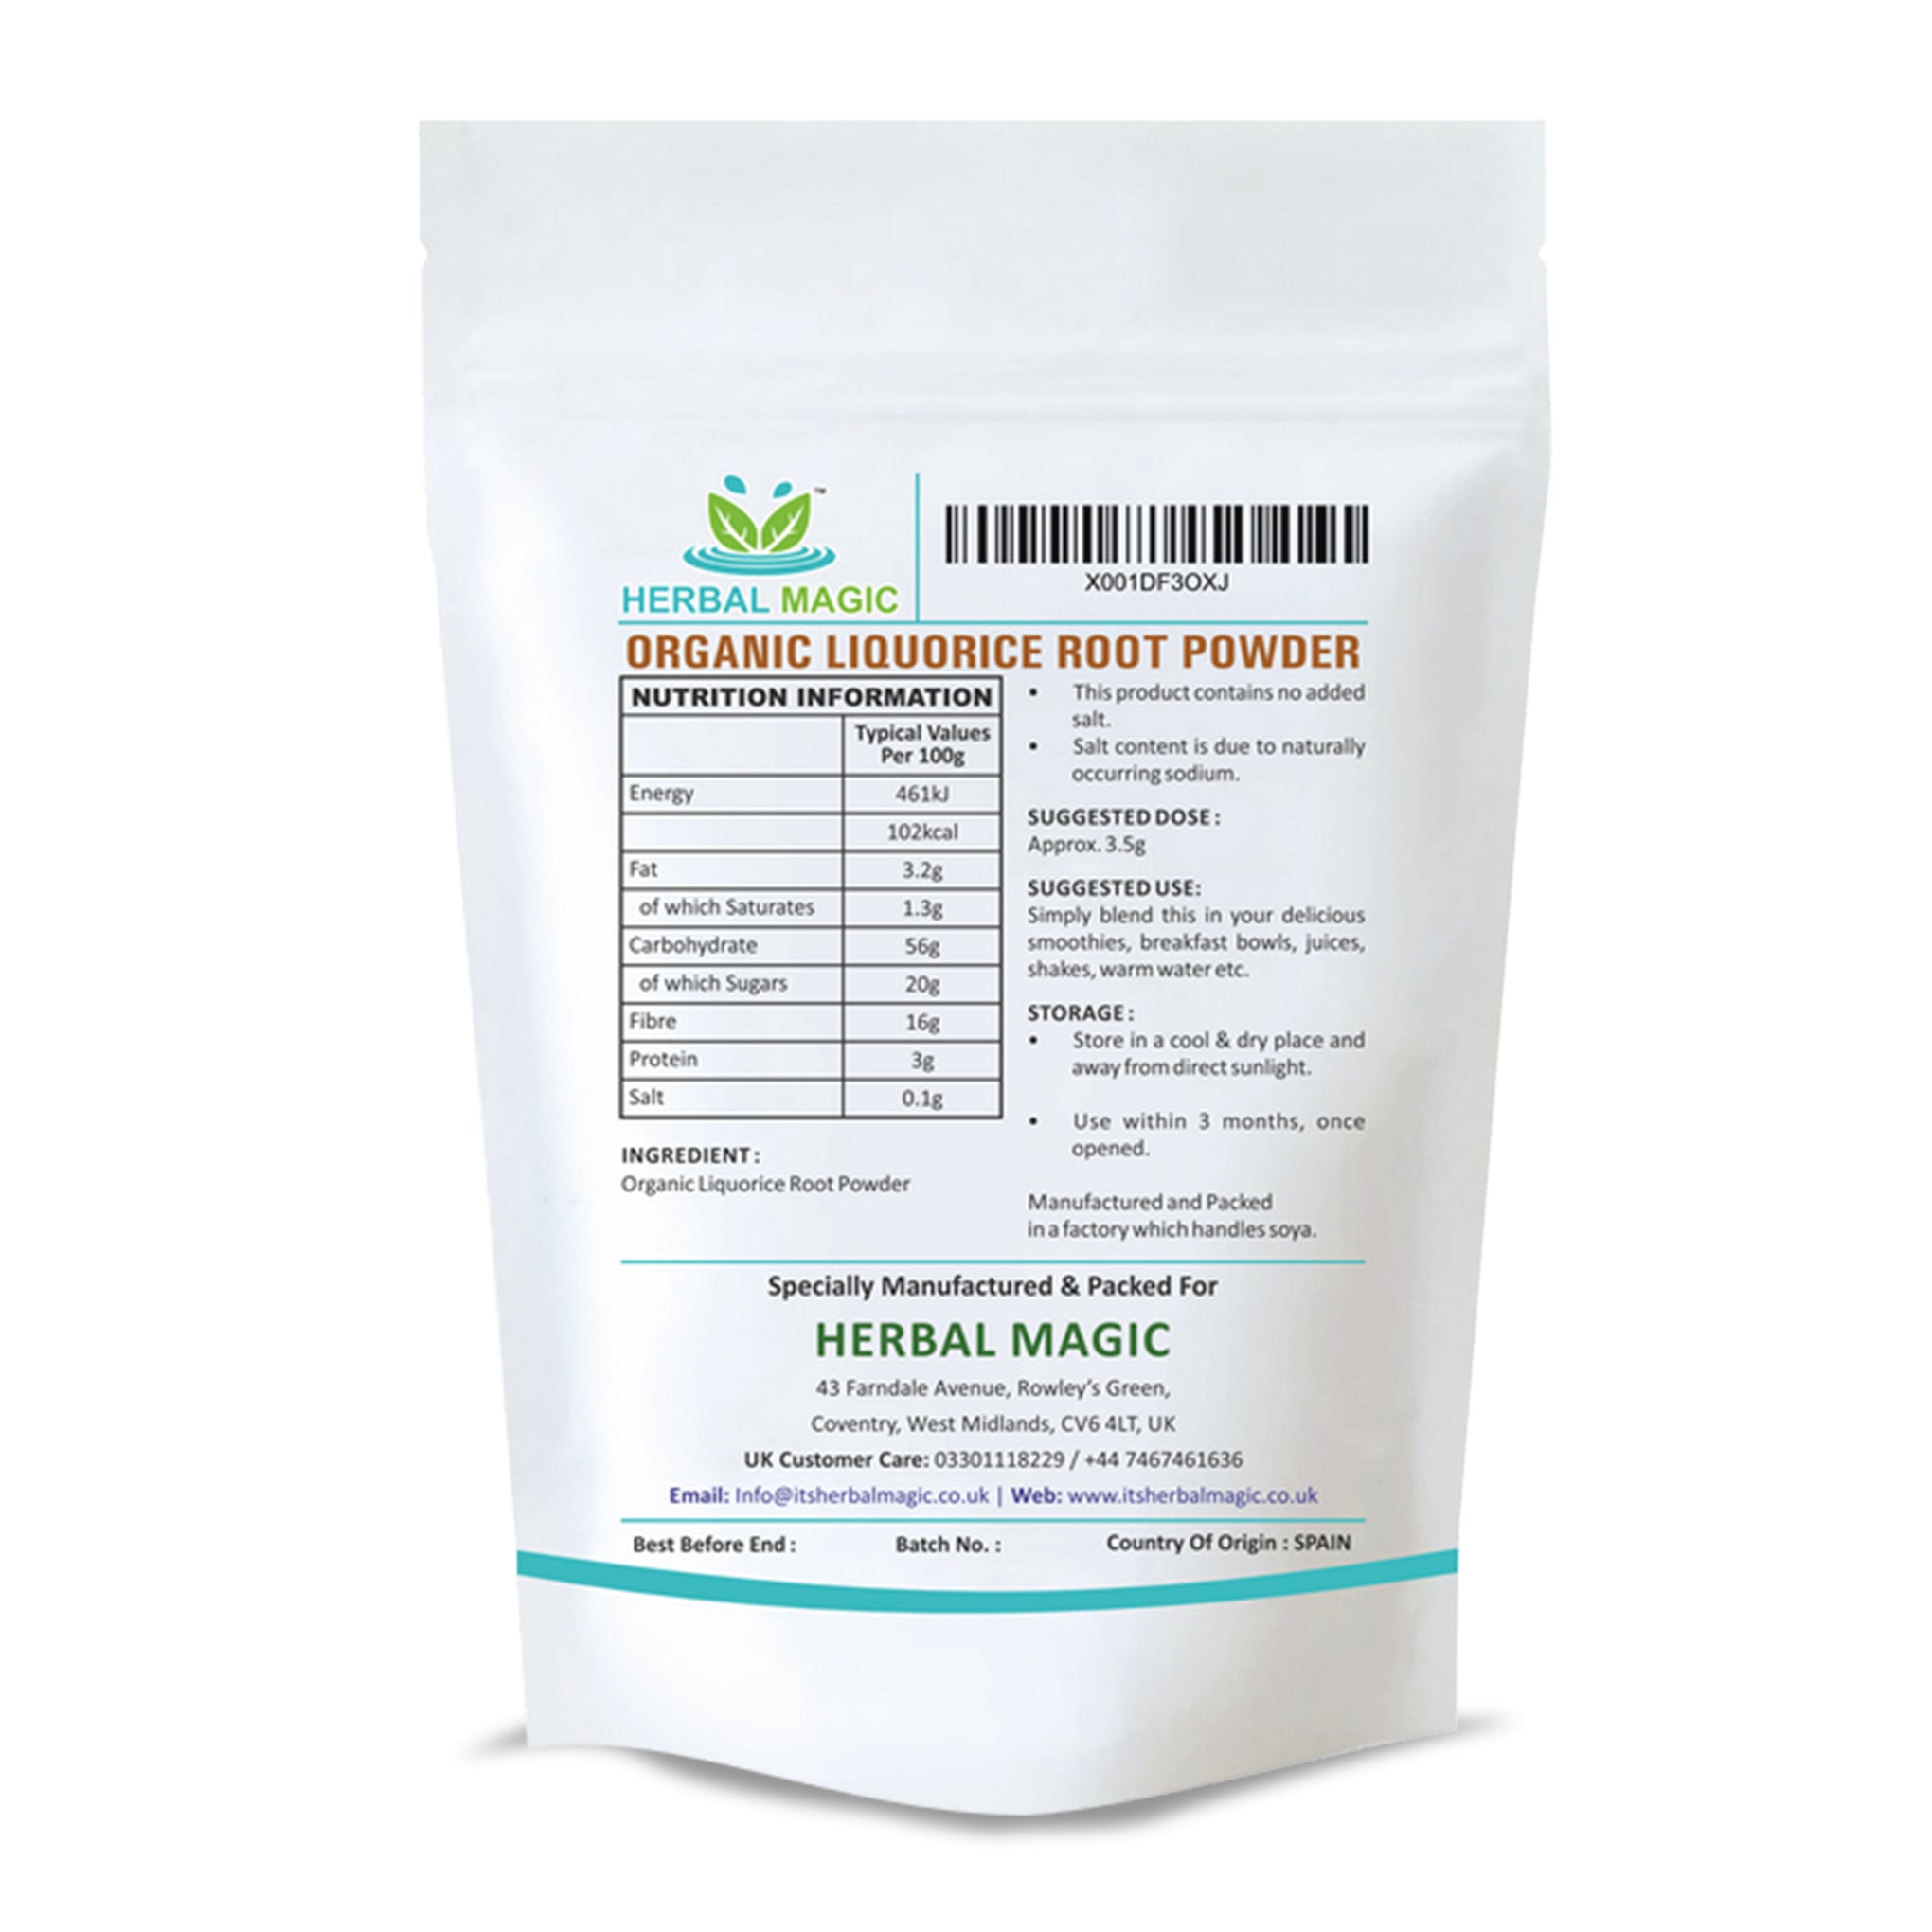 Organic Liquorice Root Powder